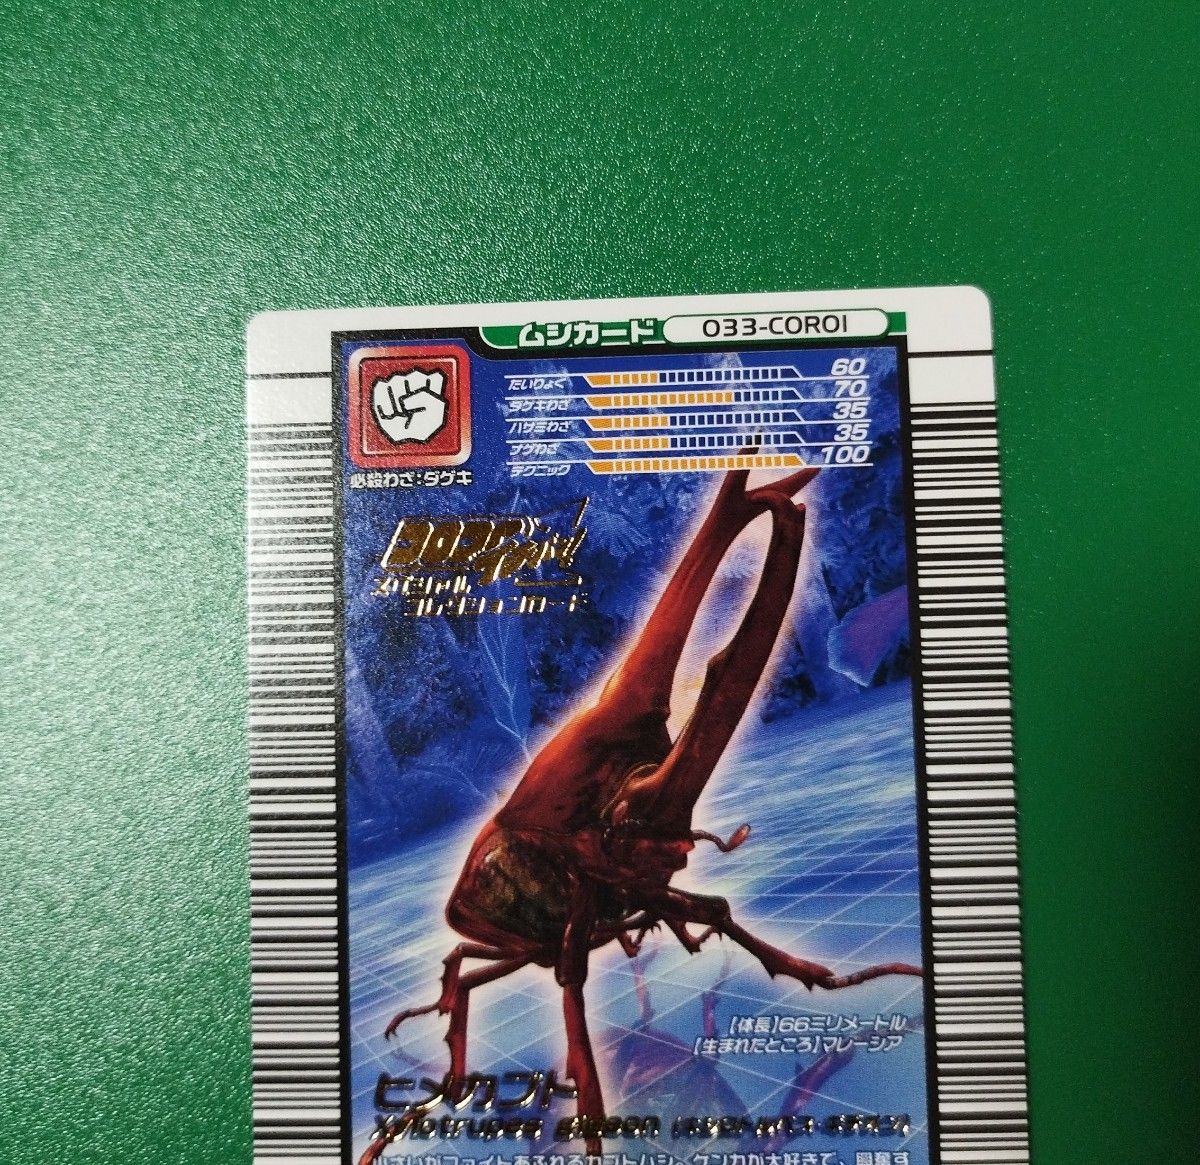 ムシキング コロコロイチバン 限定 スーパーアタックタイプ ヒメカブト ムシカード033-CORO1 付録カード 貴重